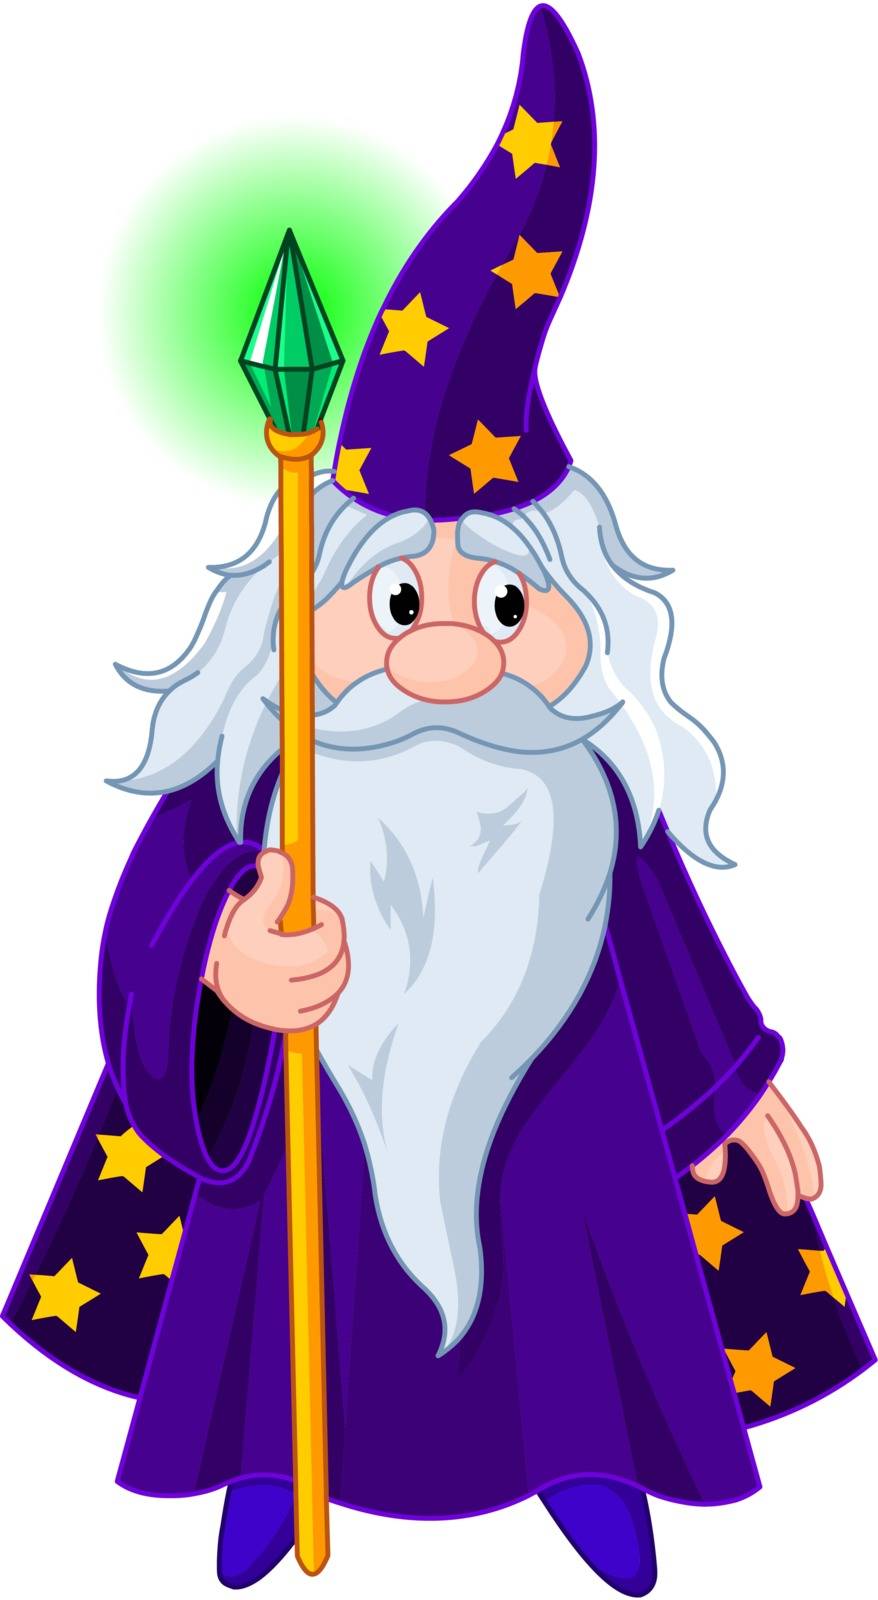 Wizard with staff by Dazdraperma